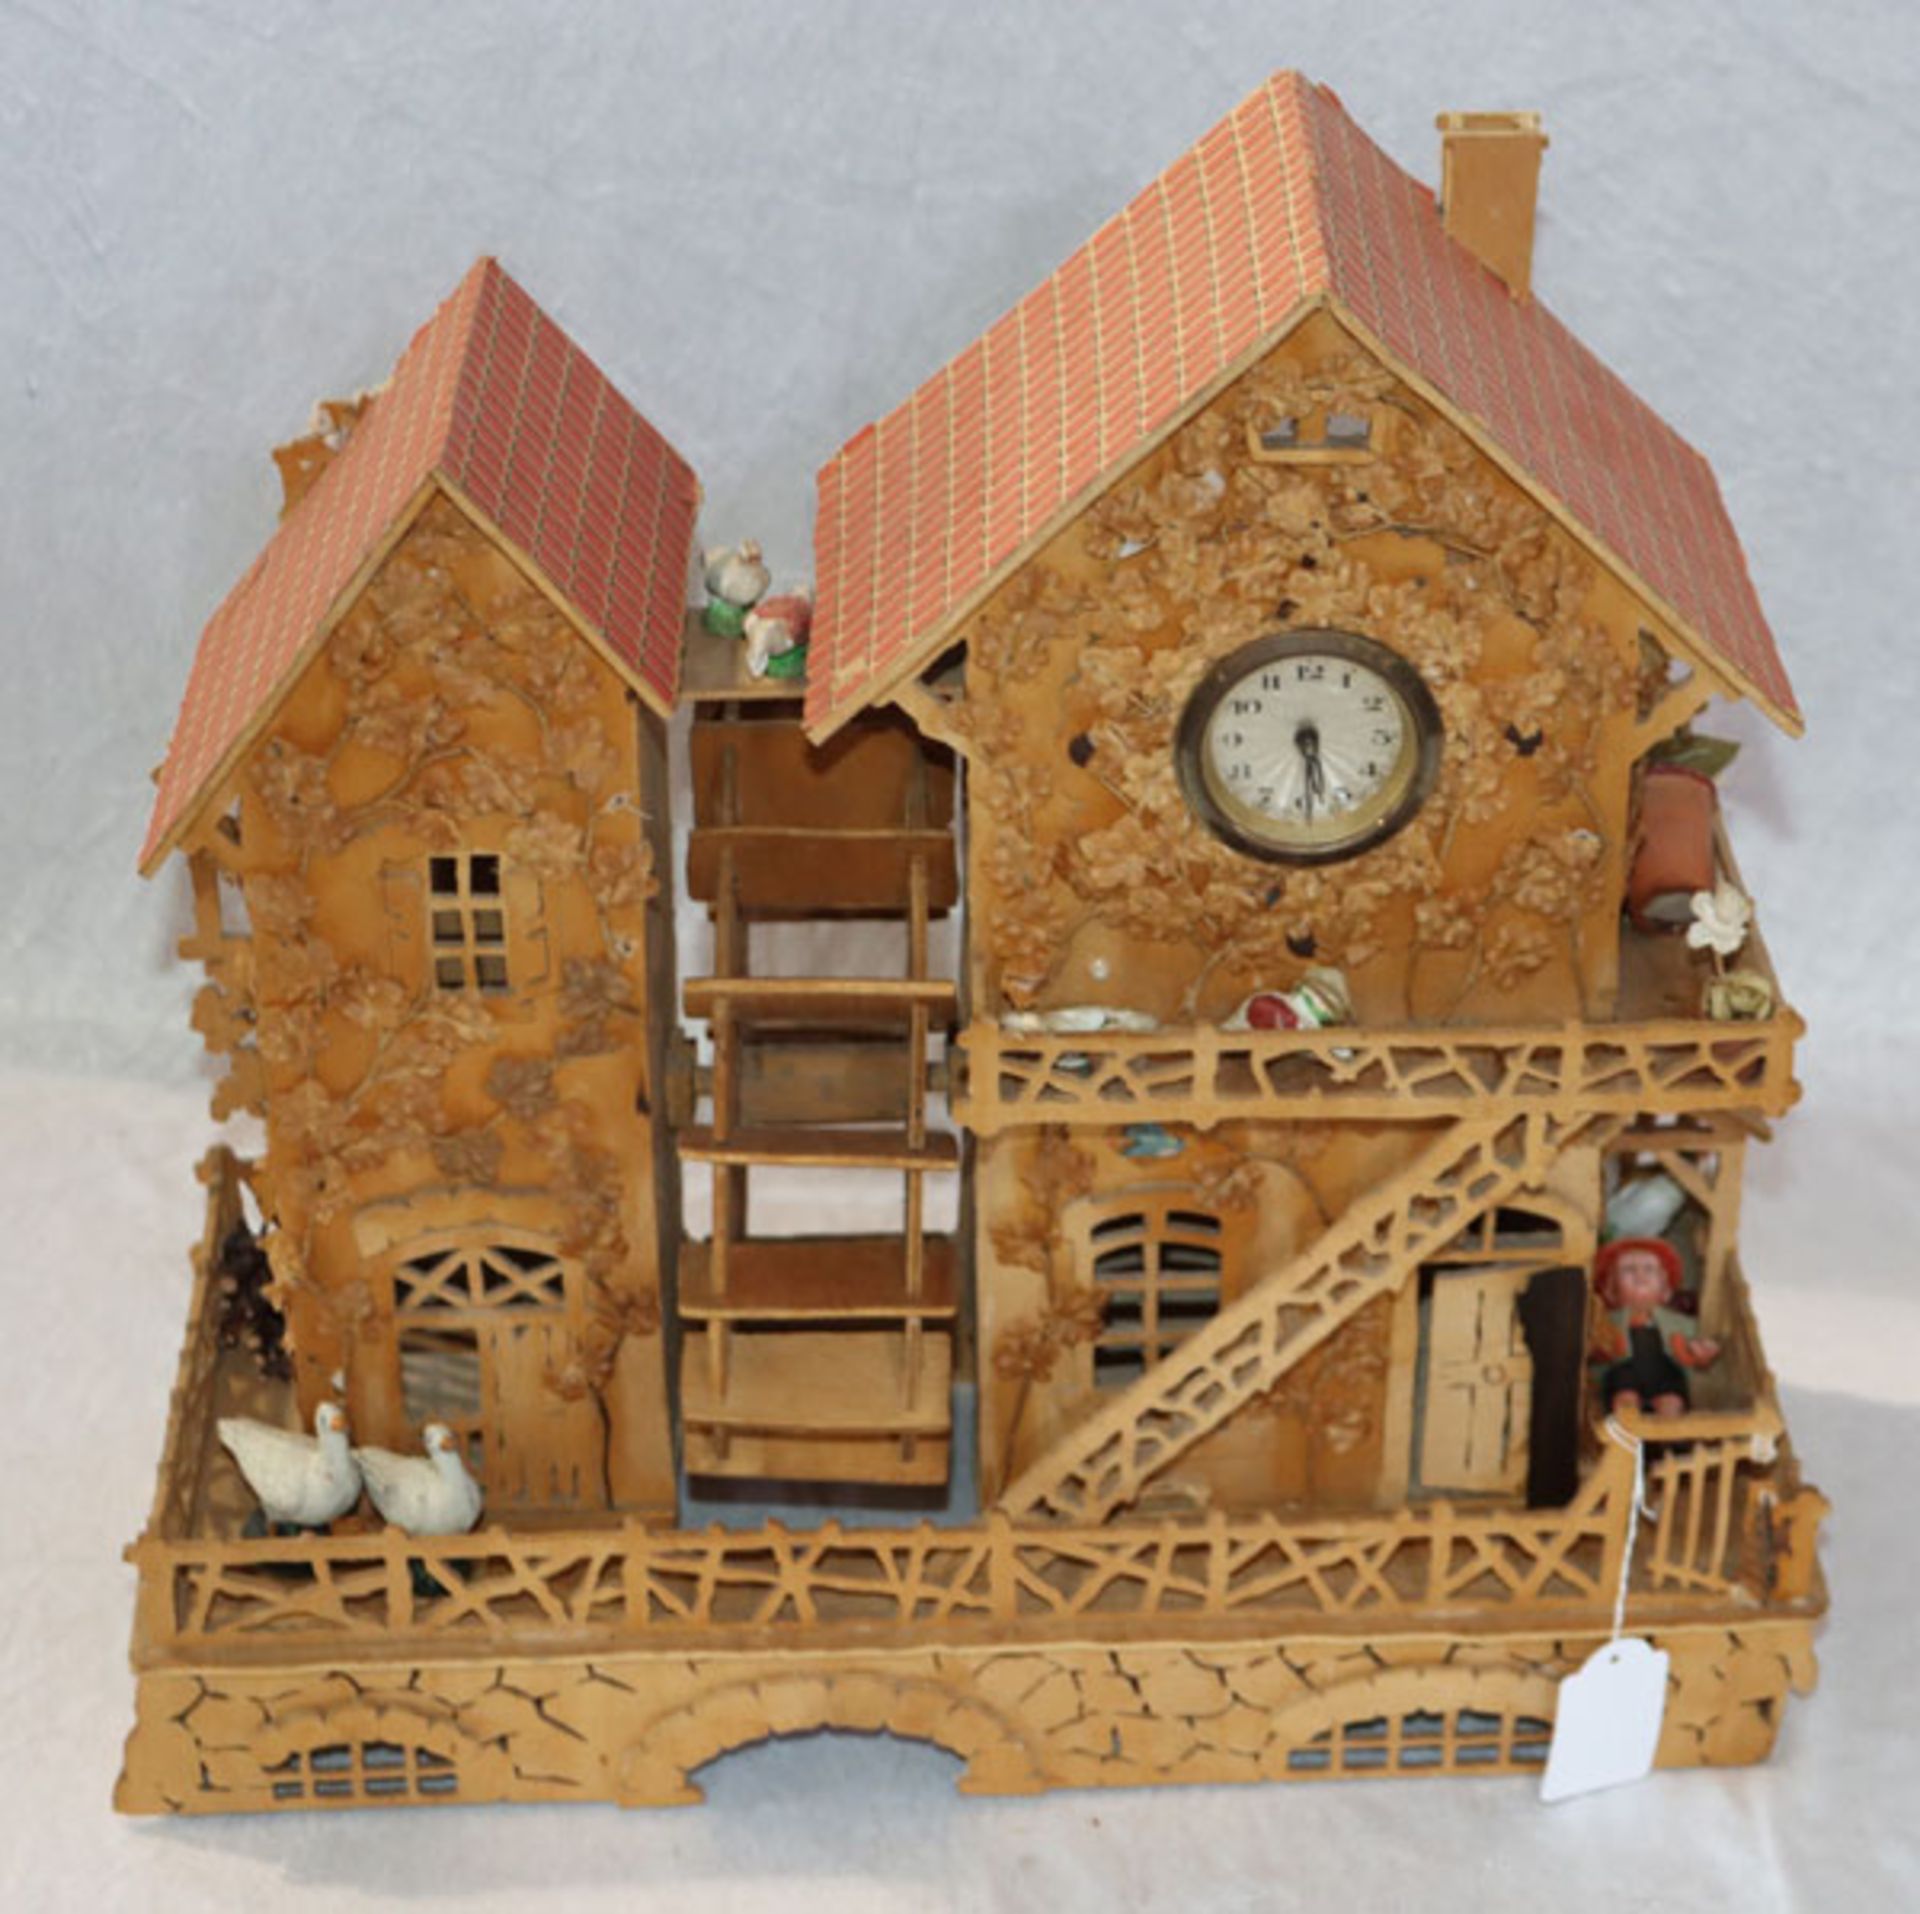 Holzmodel 'Mühle mit Wasserrad und Uhr', teils beschädigt, H 41 cm, B 43 cm, T 21 cm